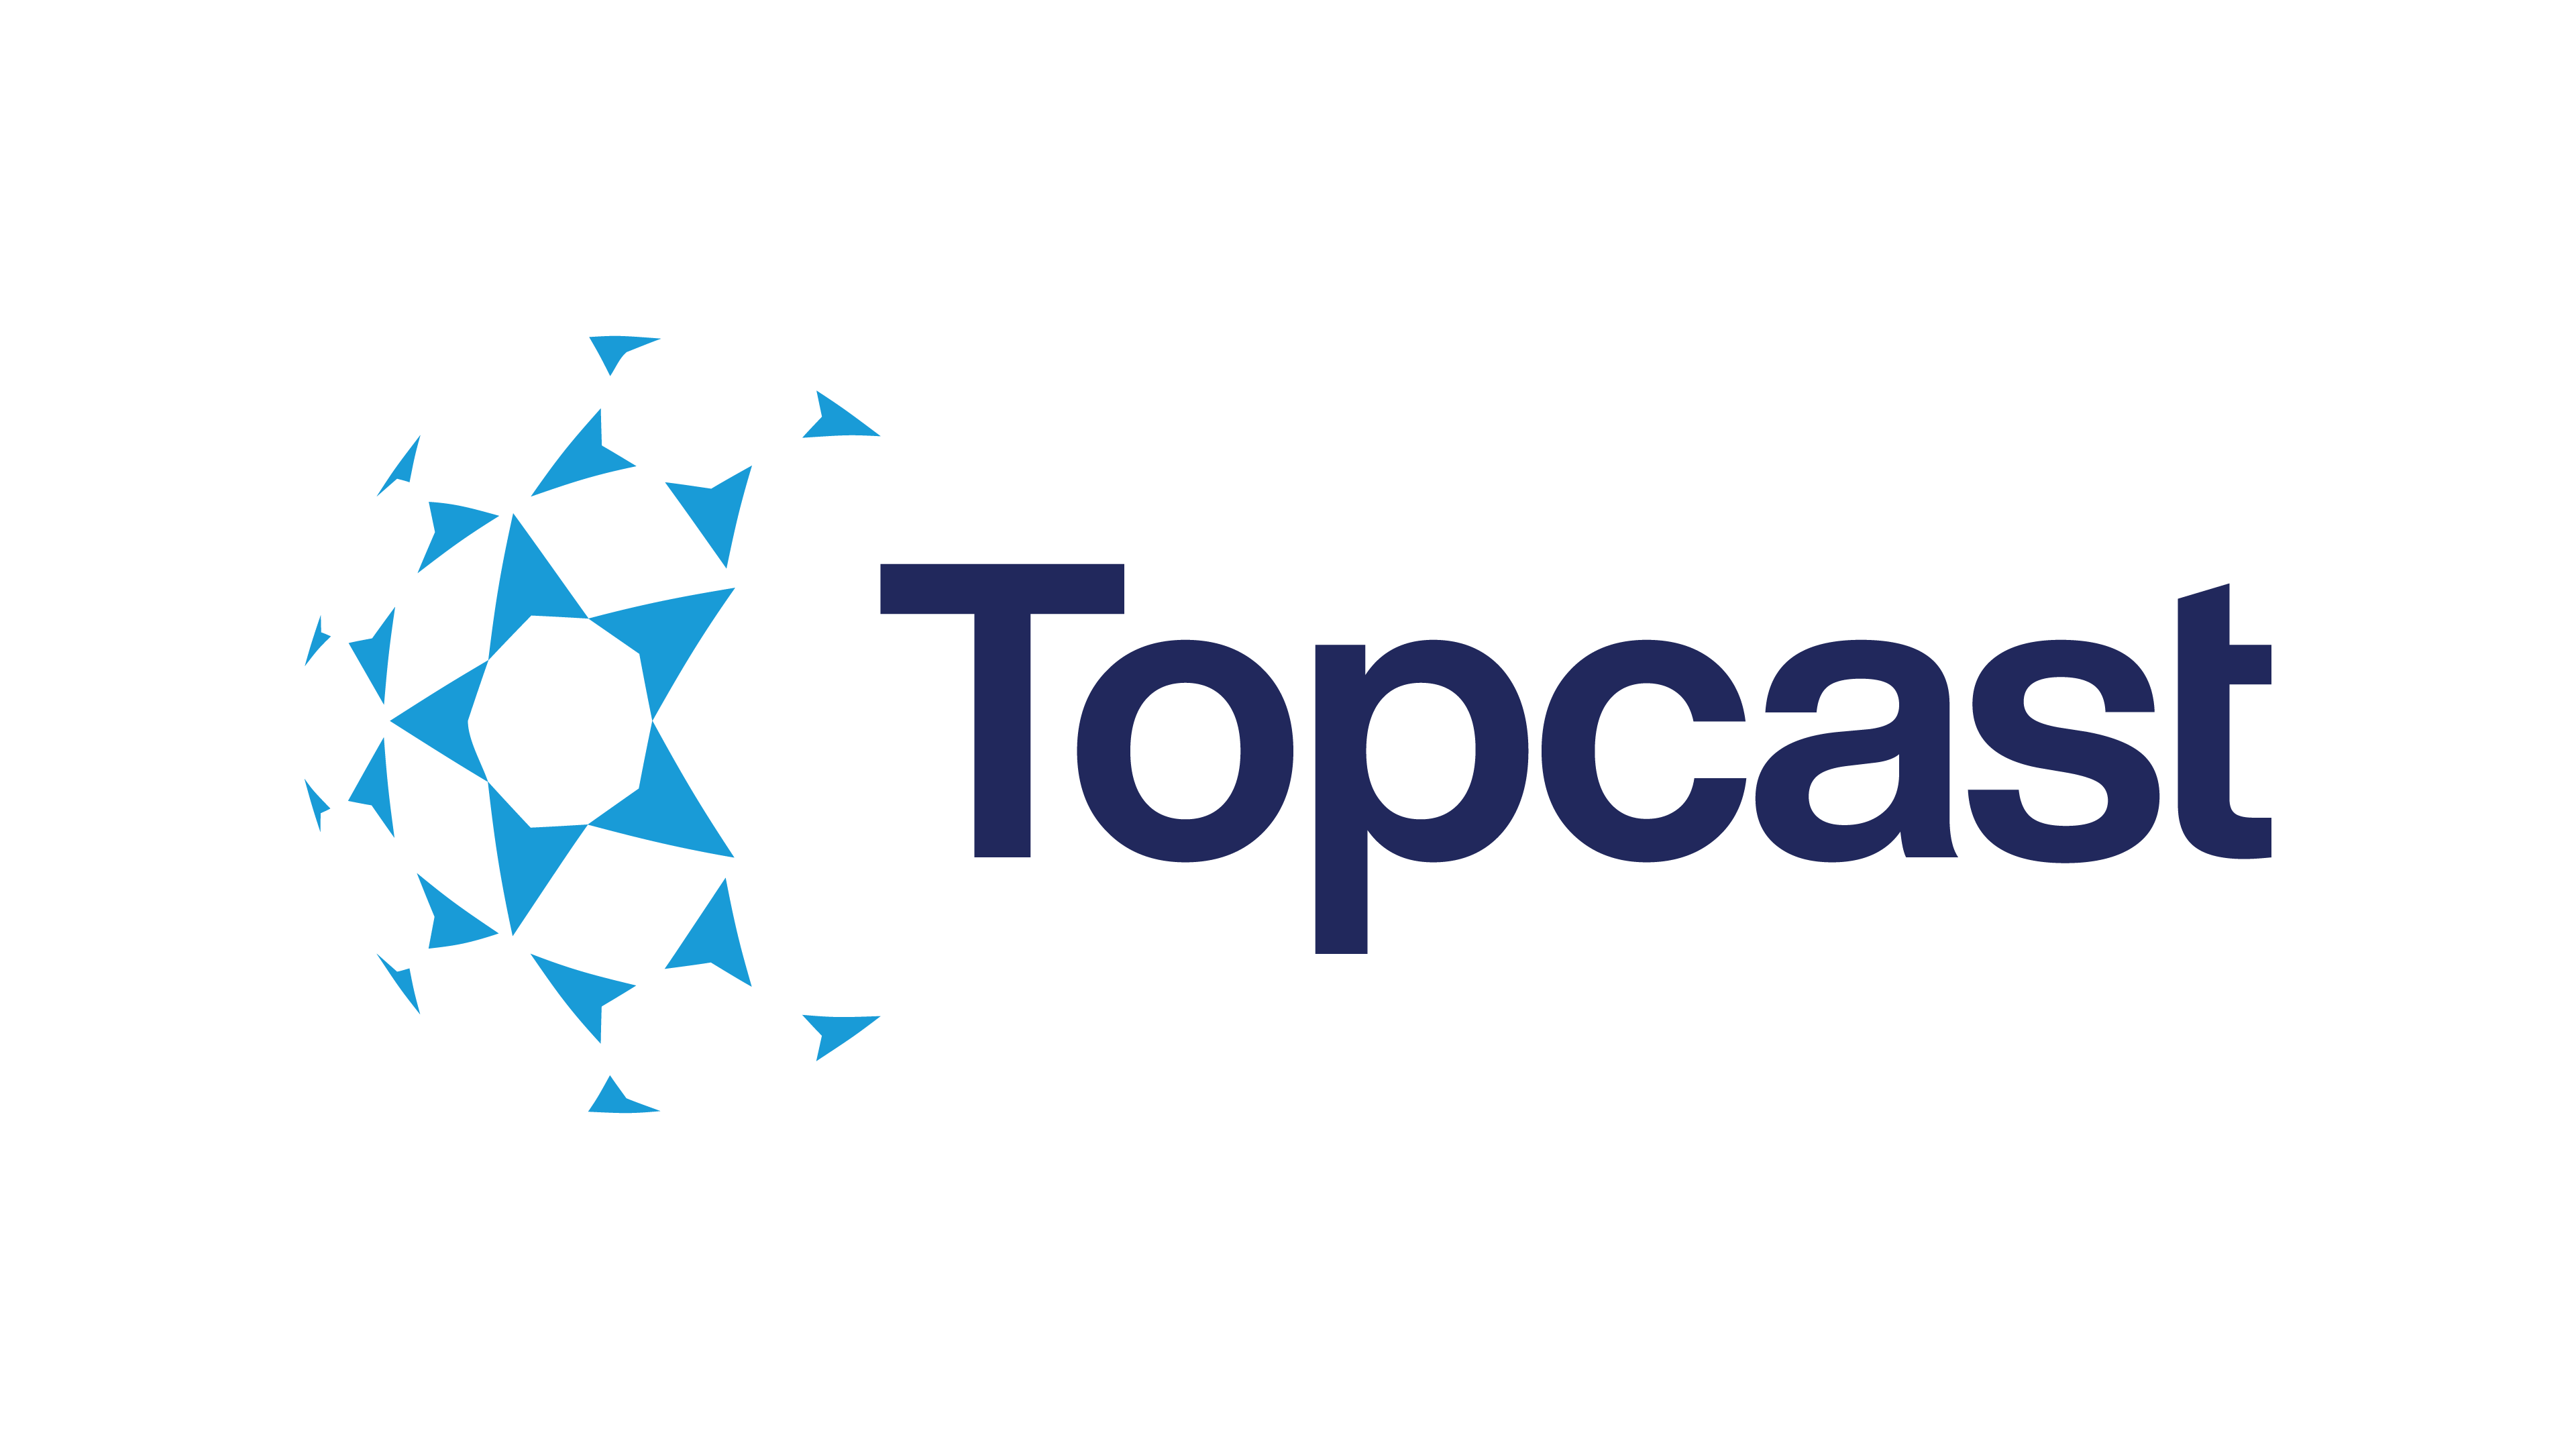 Topcast 推出全新品牌形象  以「连系你我 共同起航」理念巩固航空业桥梁角色